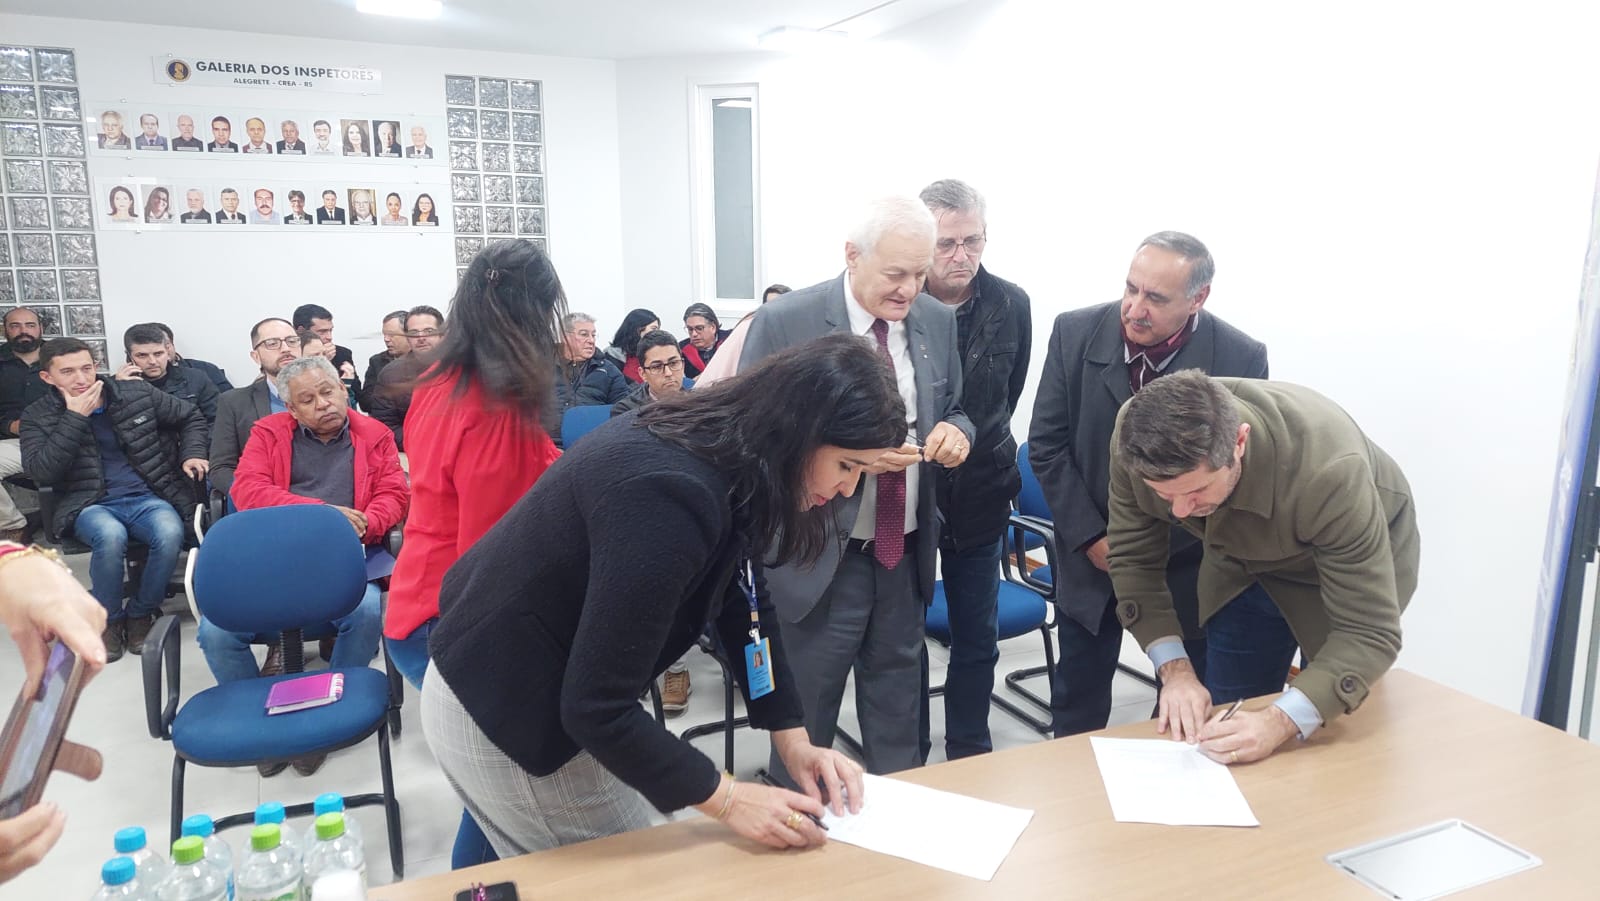 Também foi assinado, no evento, um termo de cooperação entre o município e Conselho para desenvolvimento de ações conjuntas